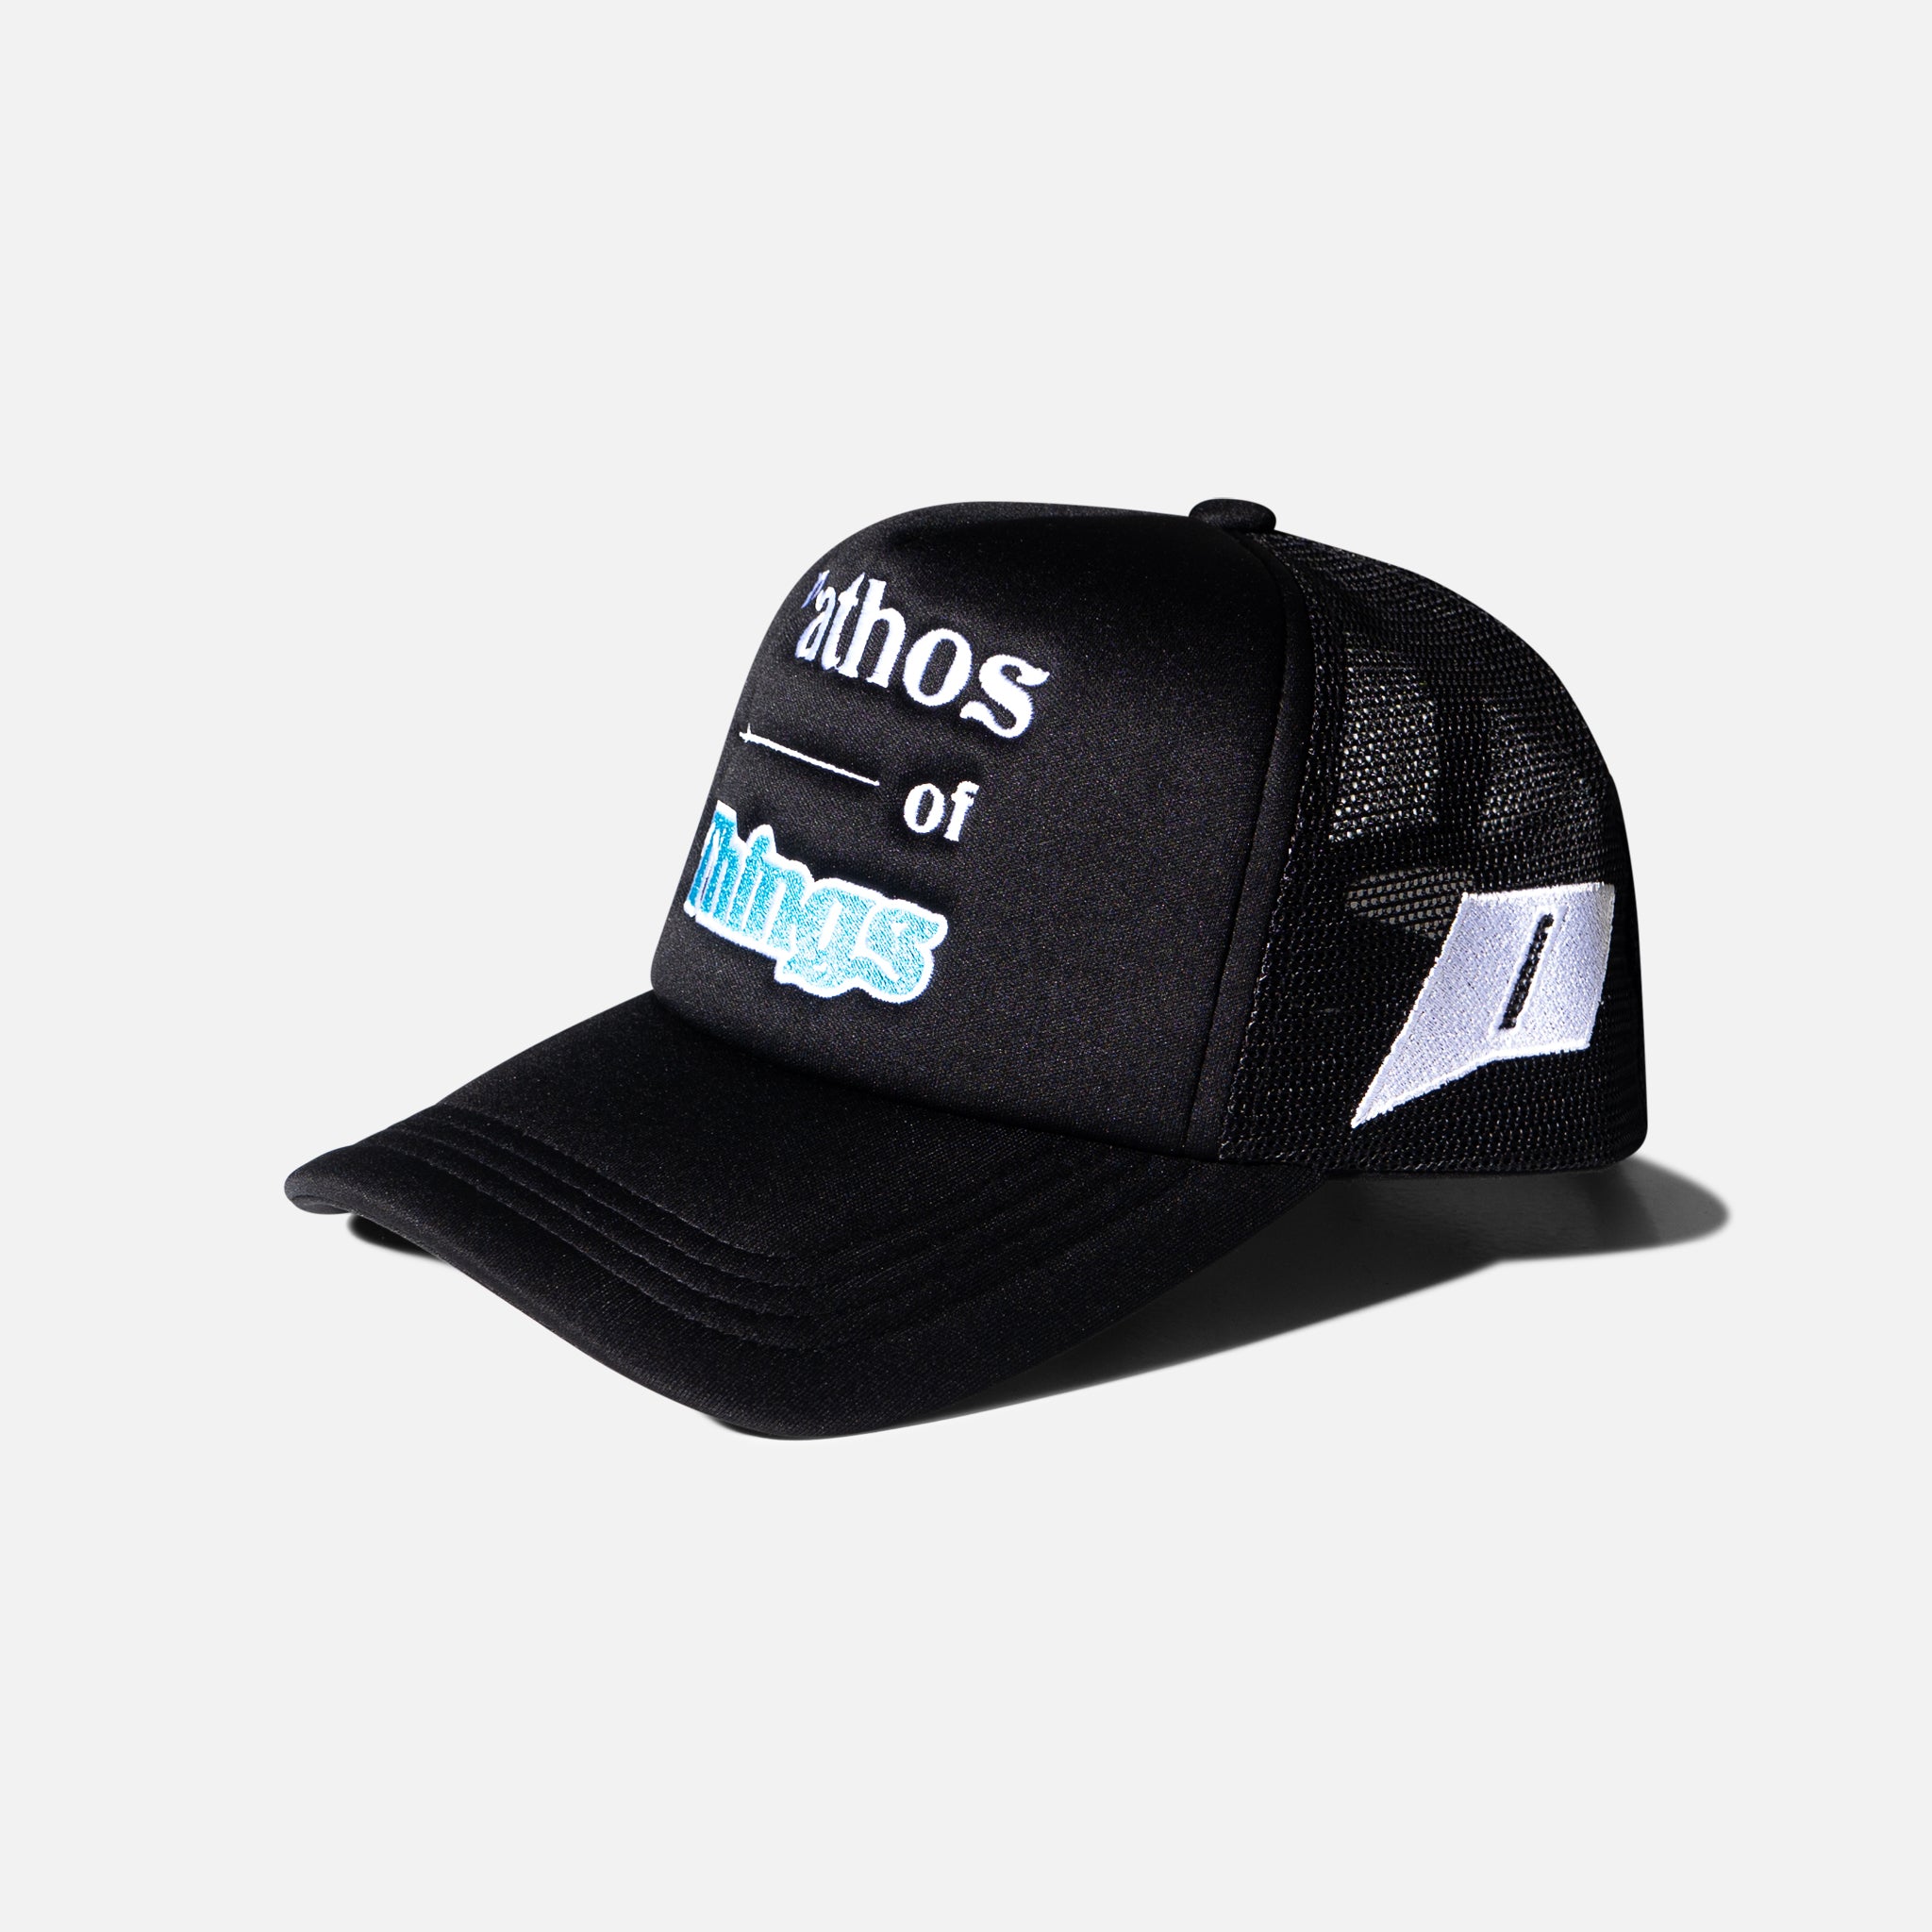 Trucker Hat Black - Pathos of Things